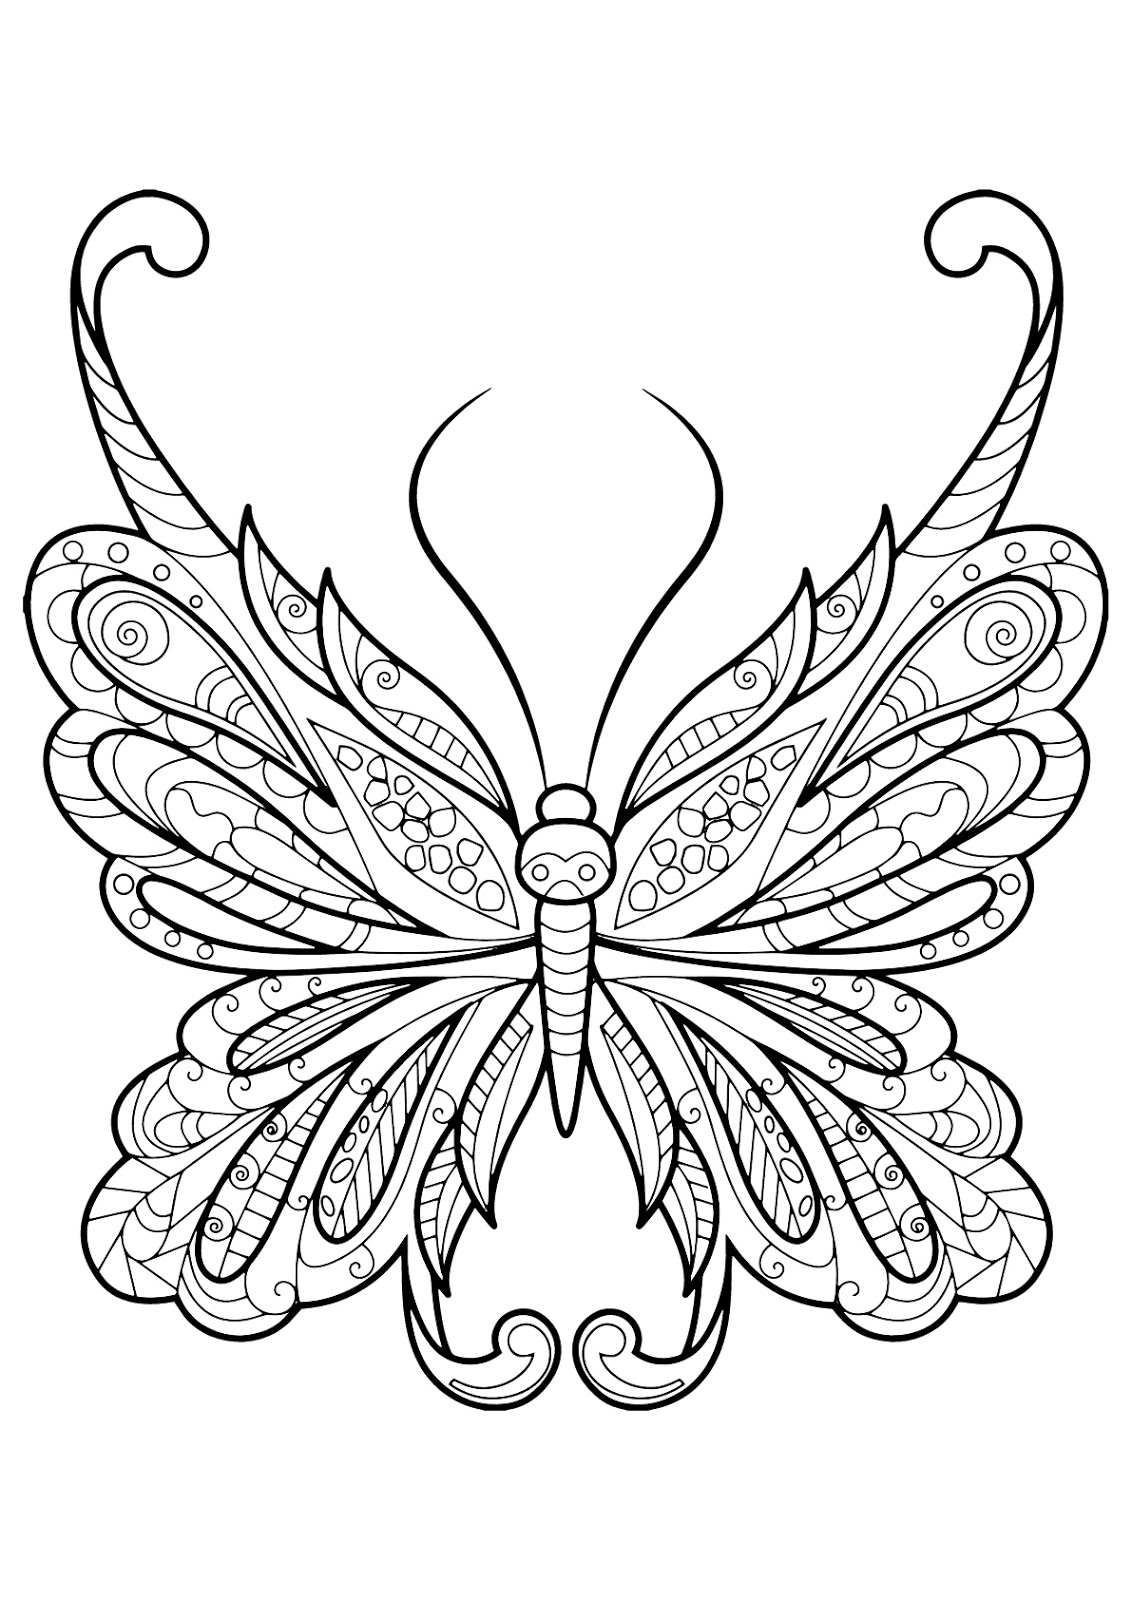 Tranh tô màu con bướm họa tiết 1